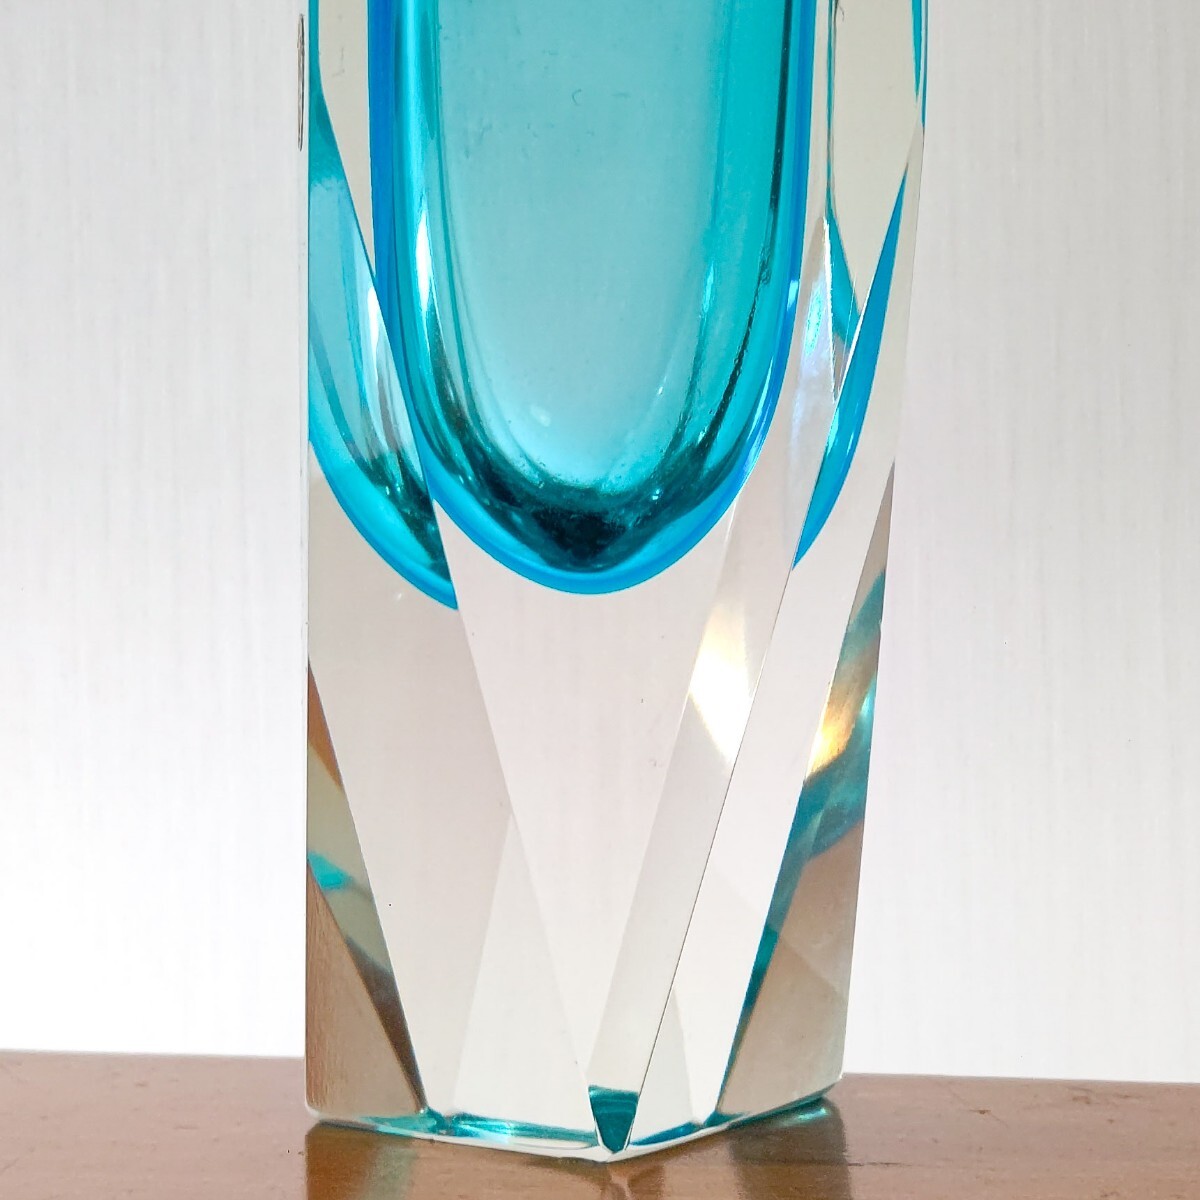  Италия производства V.A.M. венецианский стакан MURANO Murano стекло цветок основа ваза retro Vintage venechi Anne б/у бесплатная доставка быстрое решение 